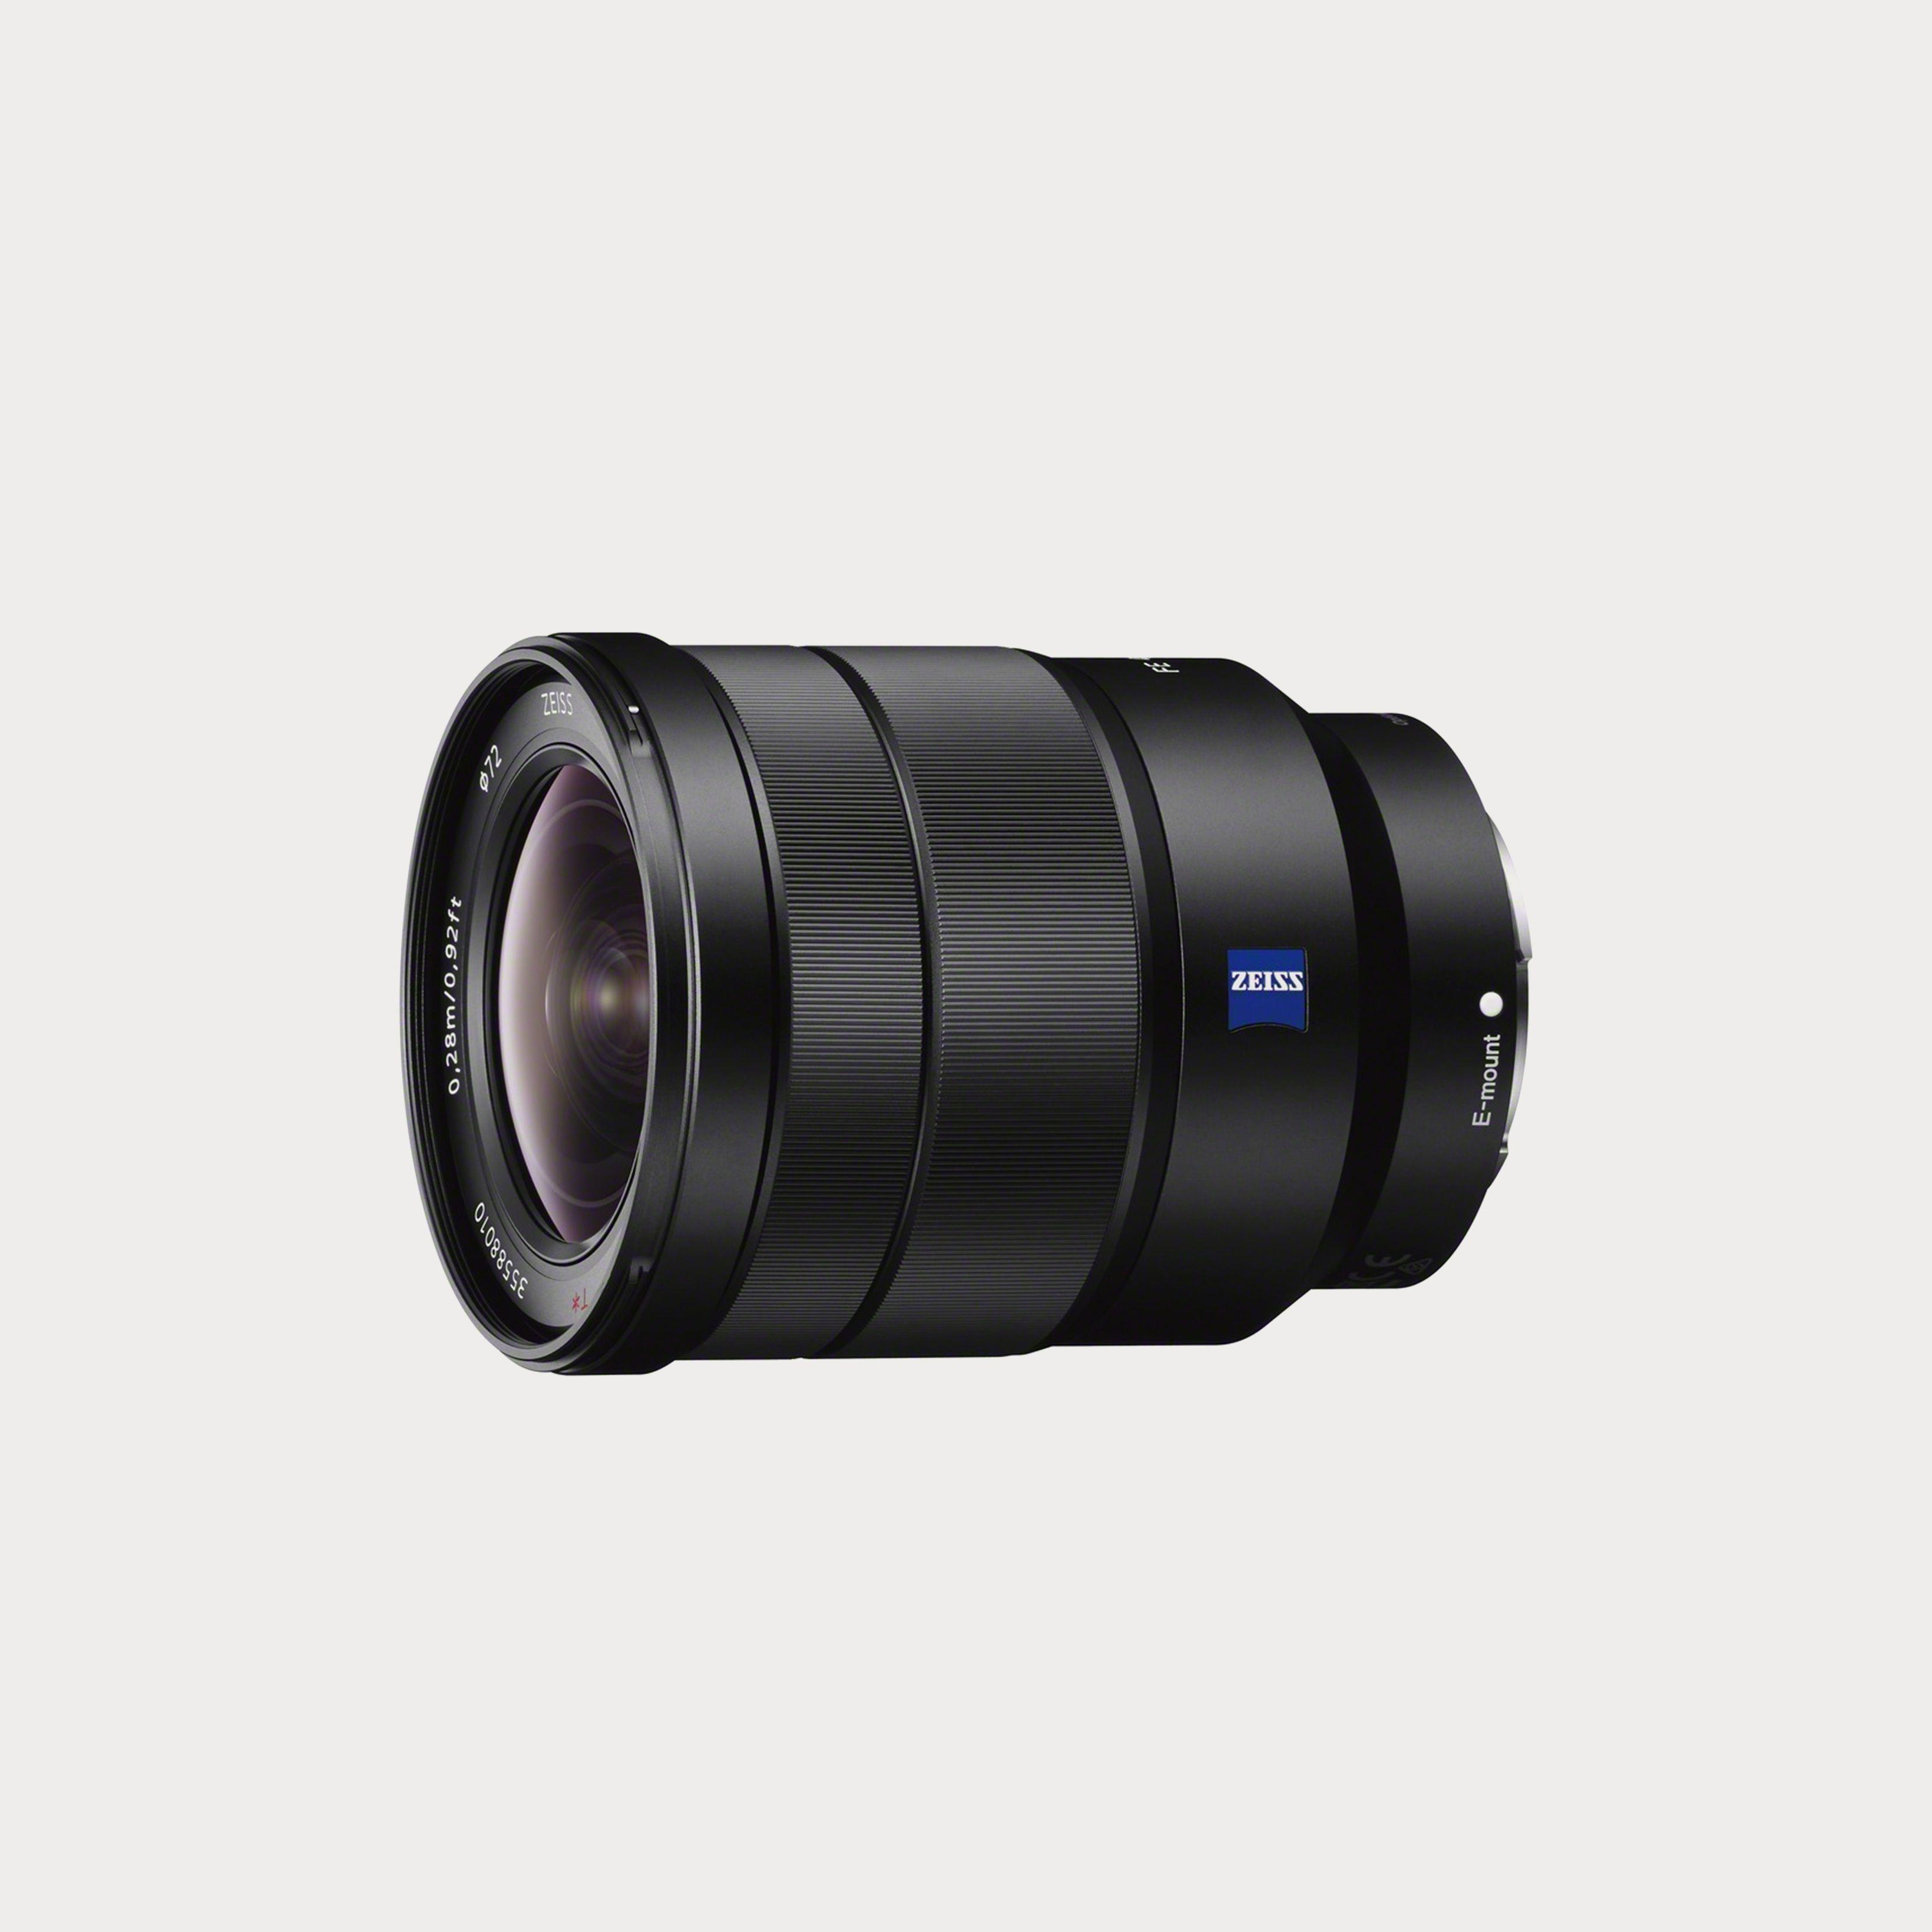 Sony Vario-Tessar T FE 16-35mm f/4 ZA OSS Lens